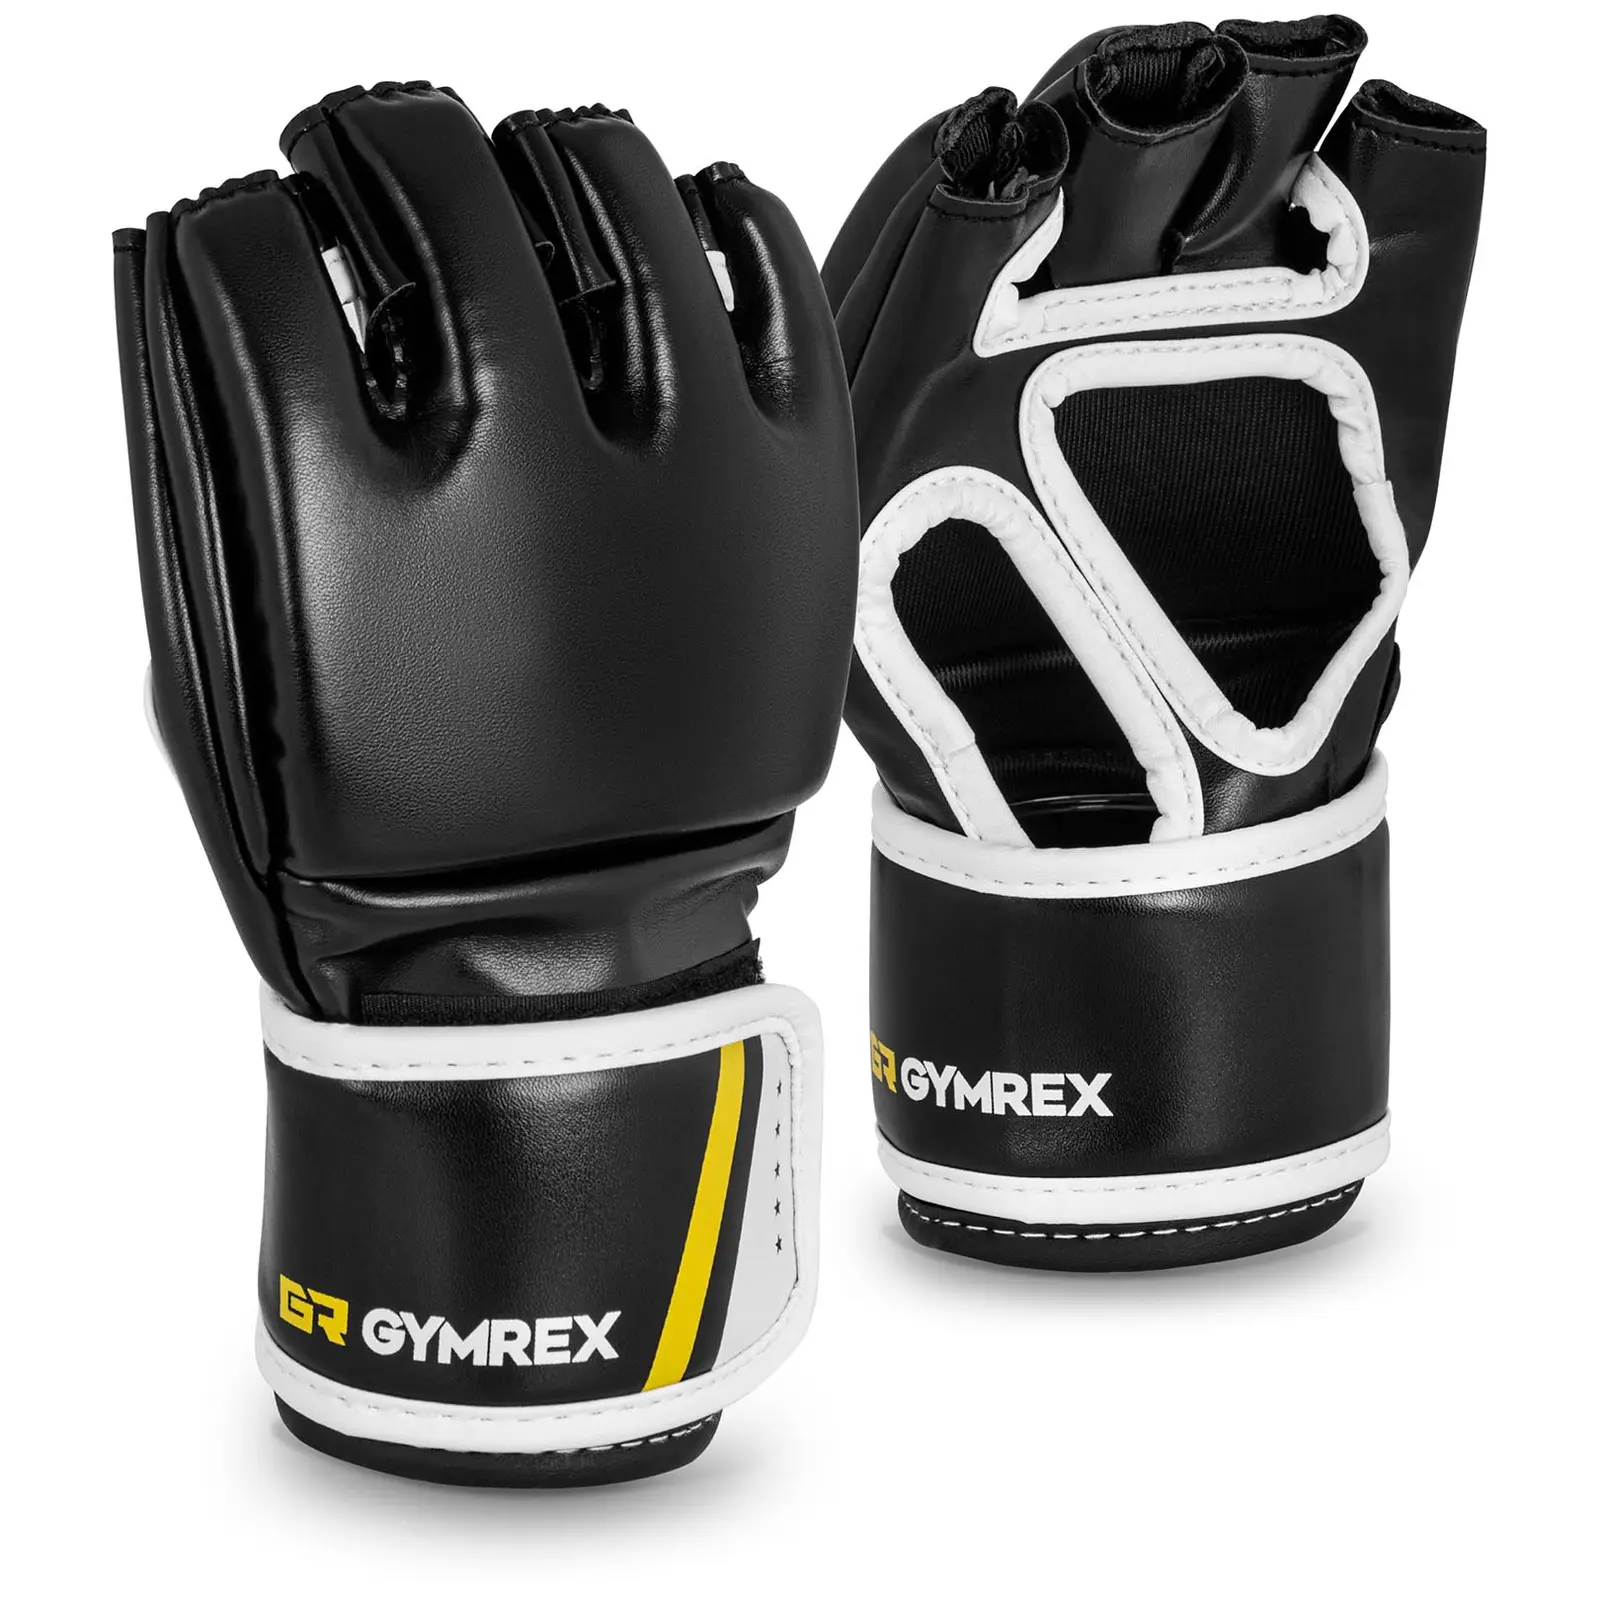 MMA rukavice vel. S/M černá/červená- bez palce - Boxerské rukavice Gymrex